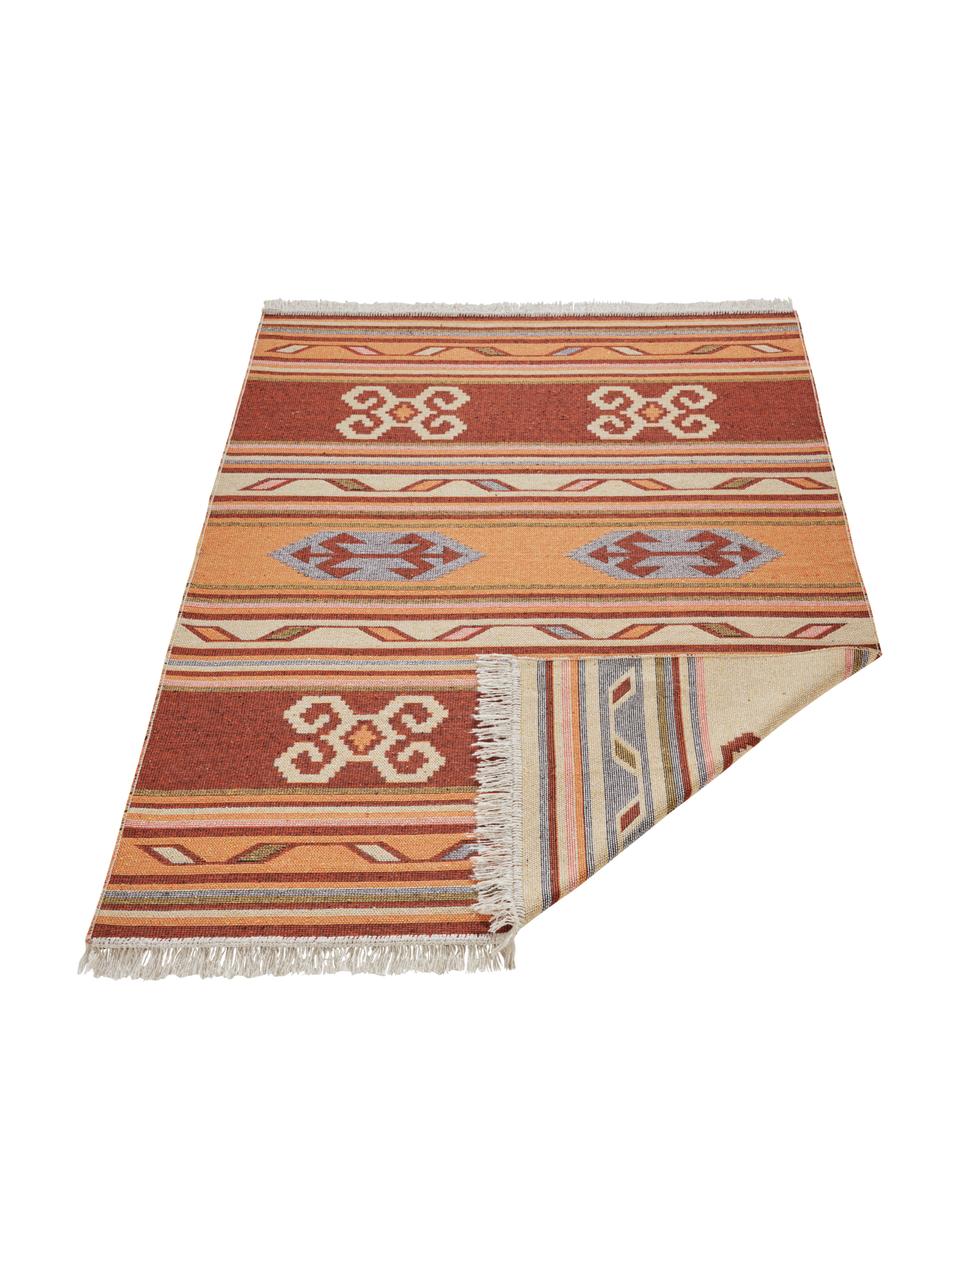 Kelimteppich Tansa im Ethno-Style aus Baumwolle, 100% Baumwolle, Orange, Mehrfarbig, B 160 x L 220 cm (Größe M)